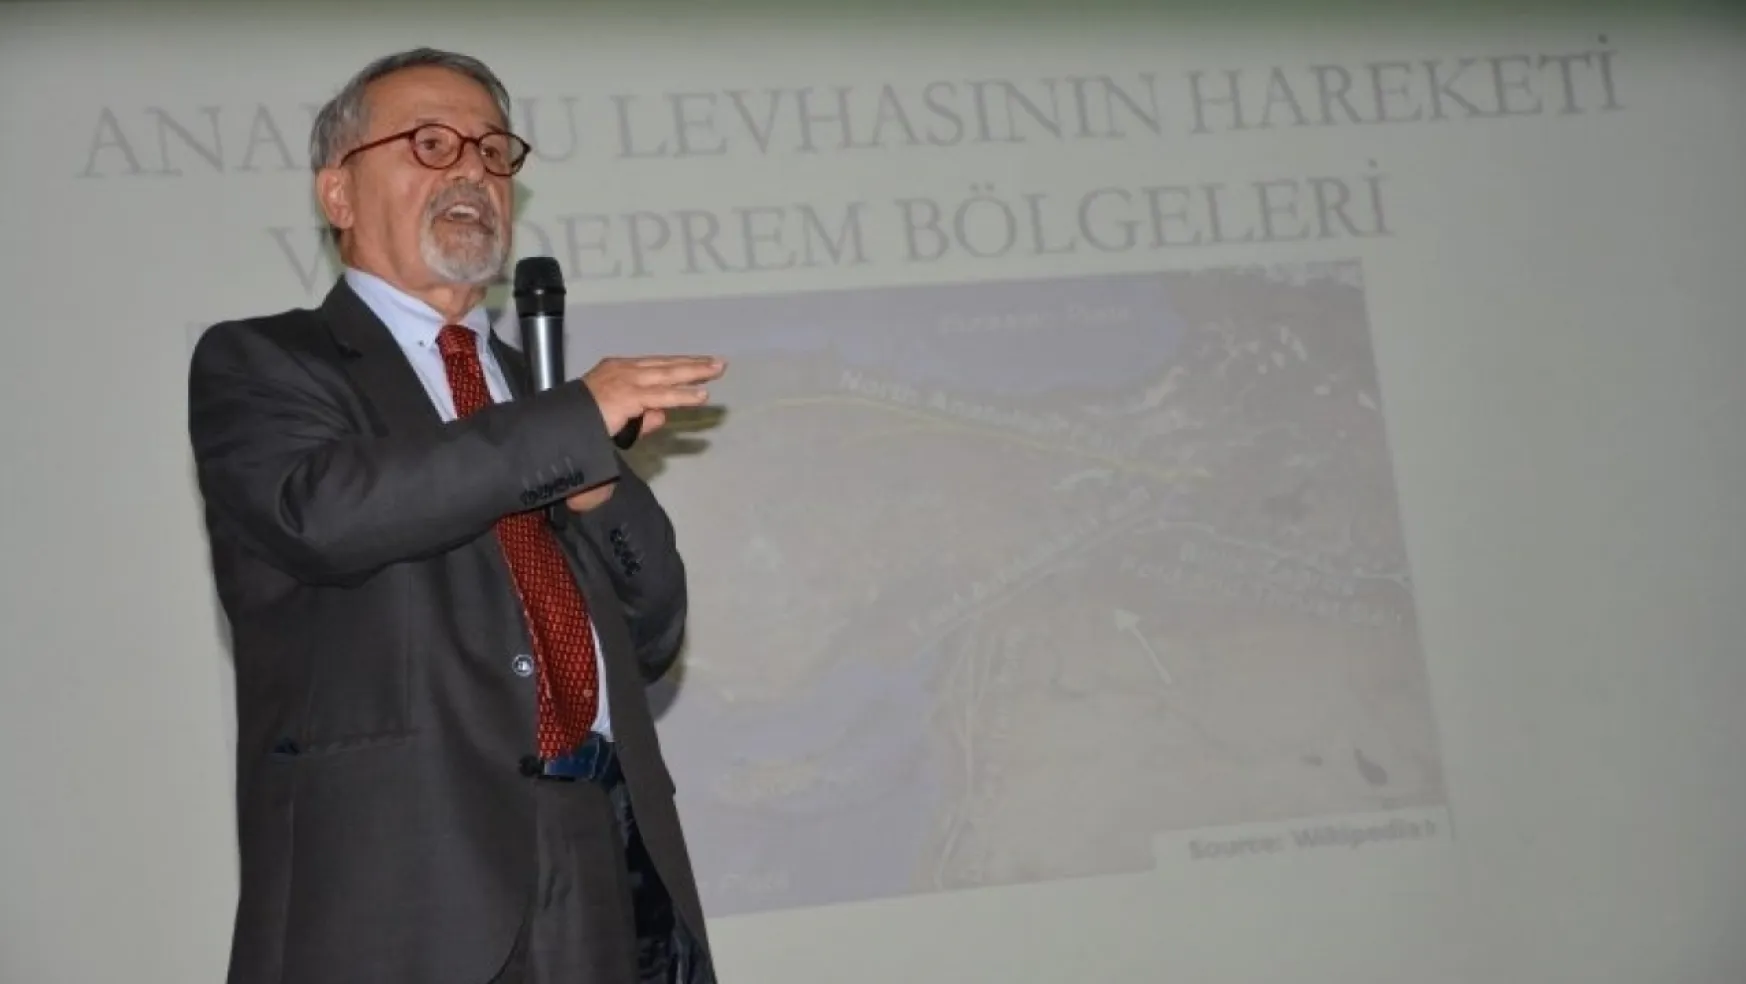 Prof. Dr. Naci Görür'den Deprem Riskine Dikkat Çeken Konferans